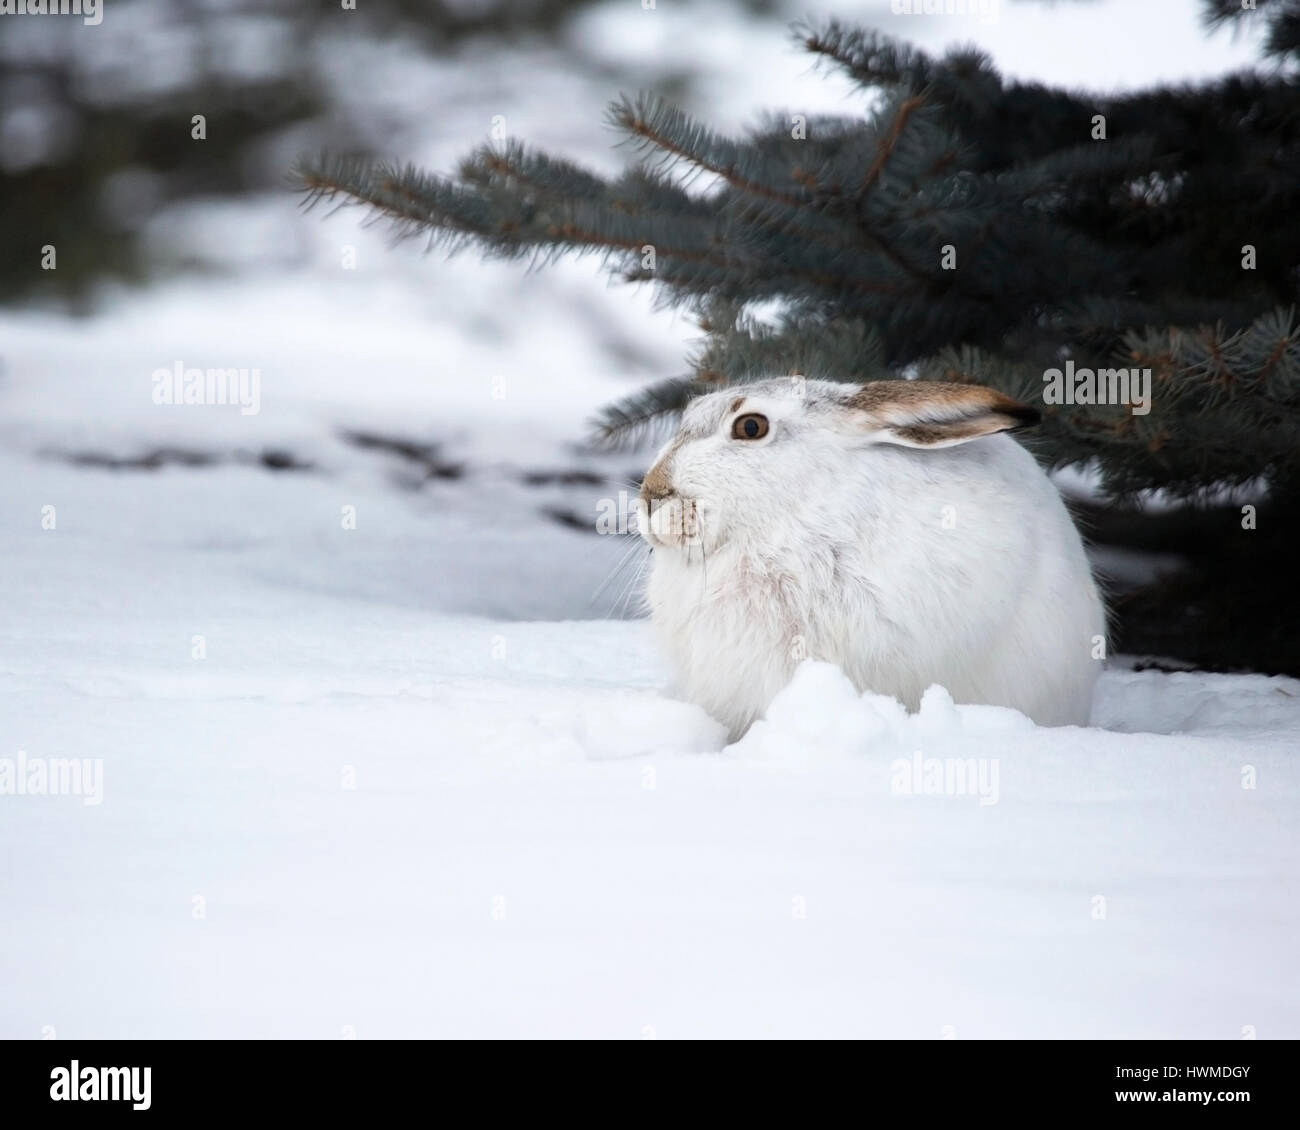 Conejo de cola blanca (Lepus townsendi) con abrigo blanco de invierno abrazado en la nieve bajo una rama de árbol, Canadá Foto de stock